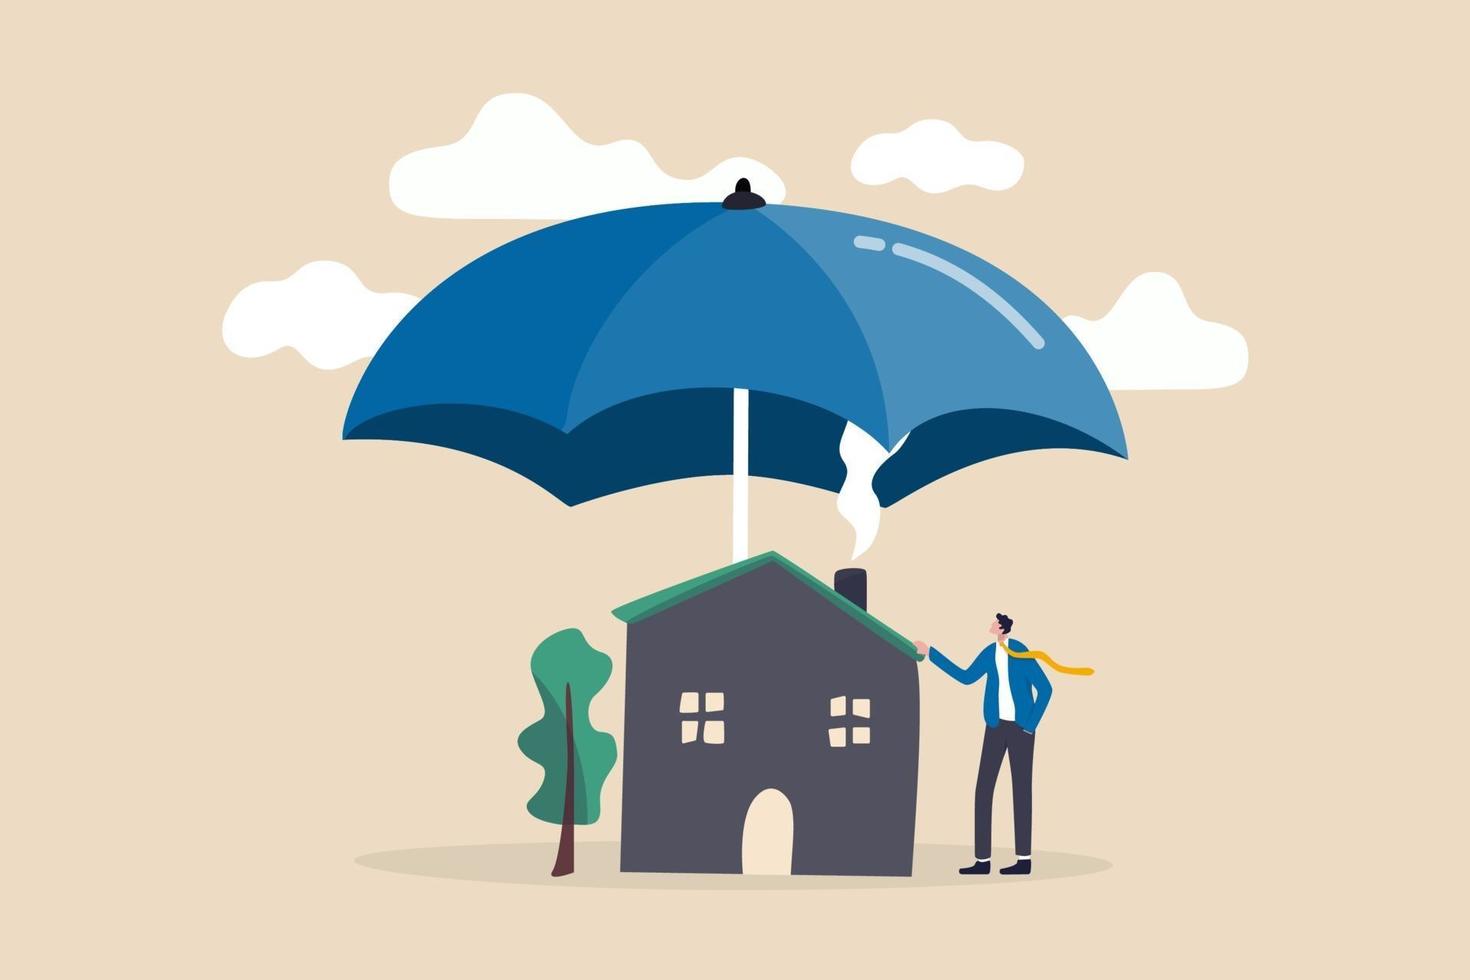 Hausversicherung, Hauskatastrophe versichern Deckung oder Sicherheit oder Schutzschild für Wohngebäudekonzept vektor